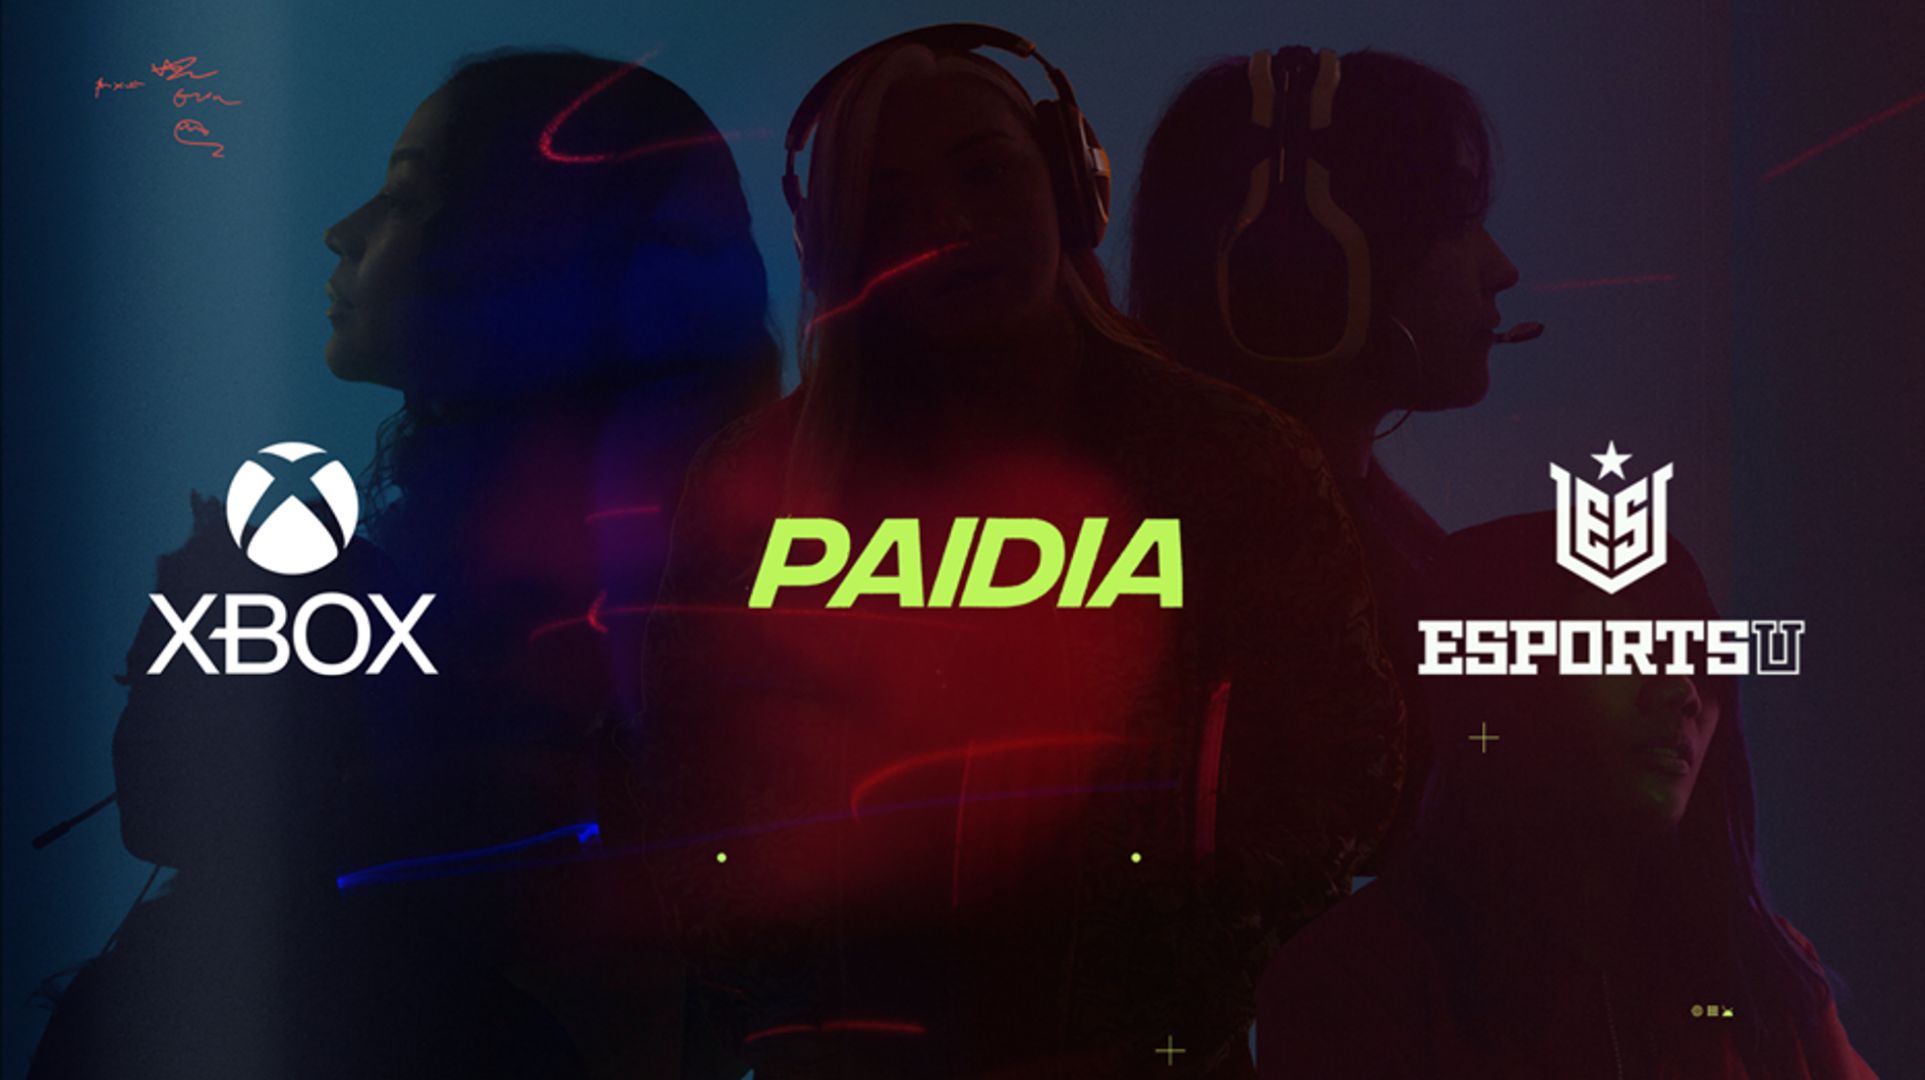 Os logotipos do Xbox, Paidia e EsportsU sobre a imagem de cinco jogadoras, significando parceria para capacitar e ampliar as oportunidades para as mulheres nos jogos.